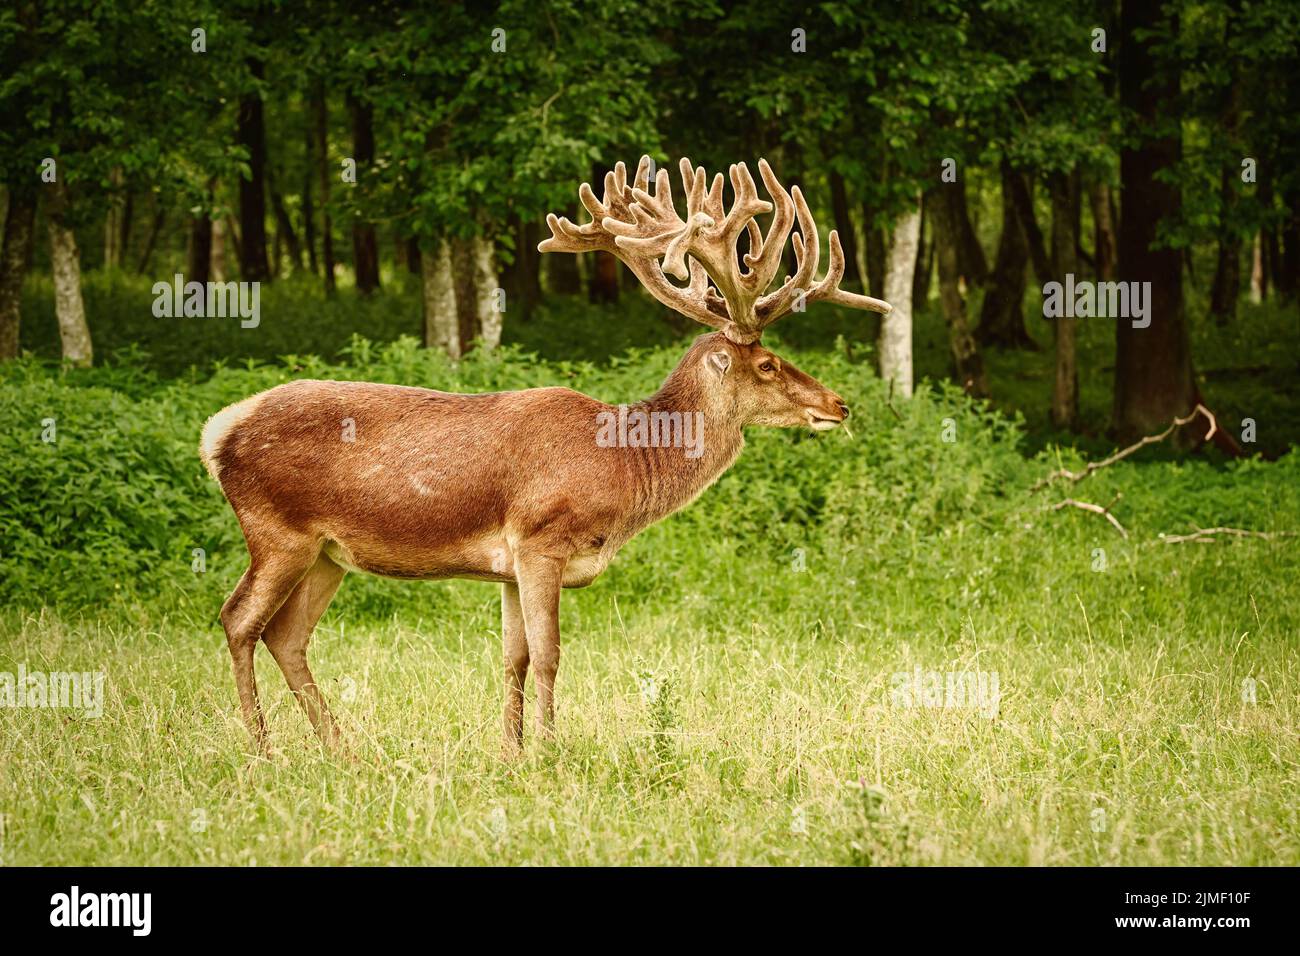 Deer with big horns Stock Photo